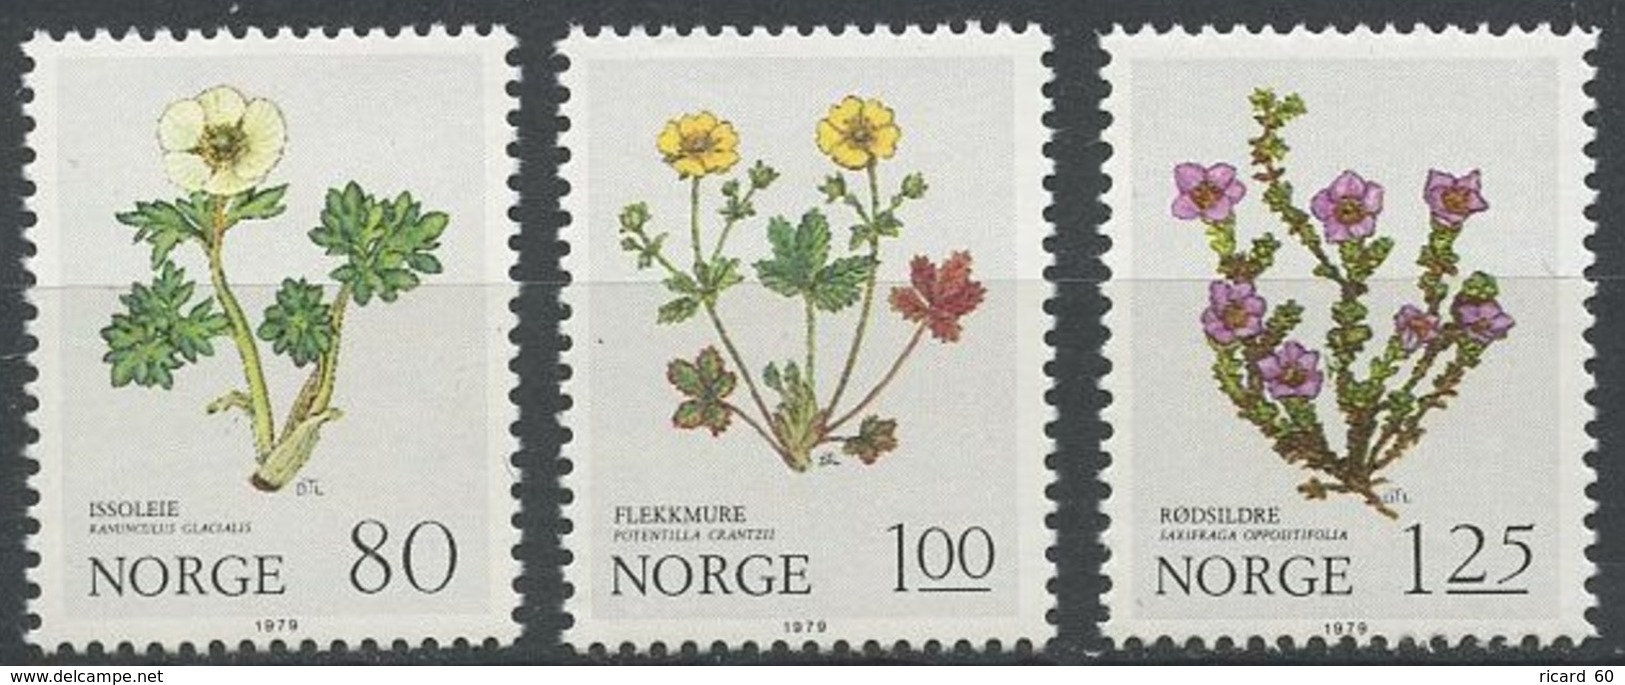 Timbres Neufs De Norvège N° 755-7 Yt, Fleurs Des Montagnes, Ranunculus Glacialis, Potentilla Crantzii, Saxifraga Opposit - Neufs